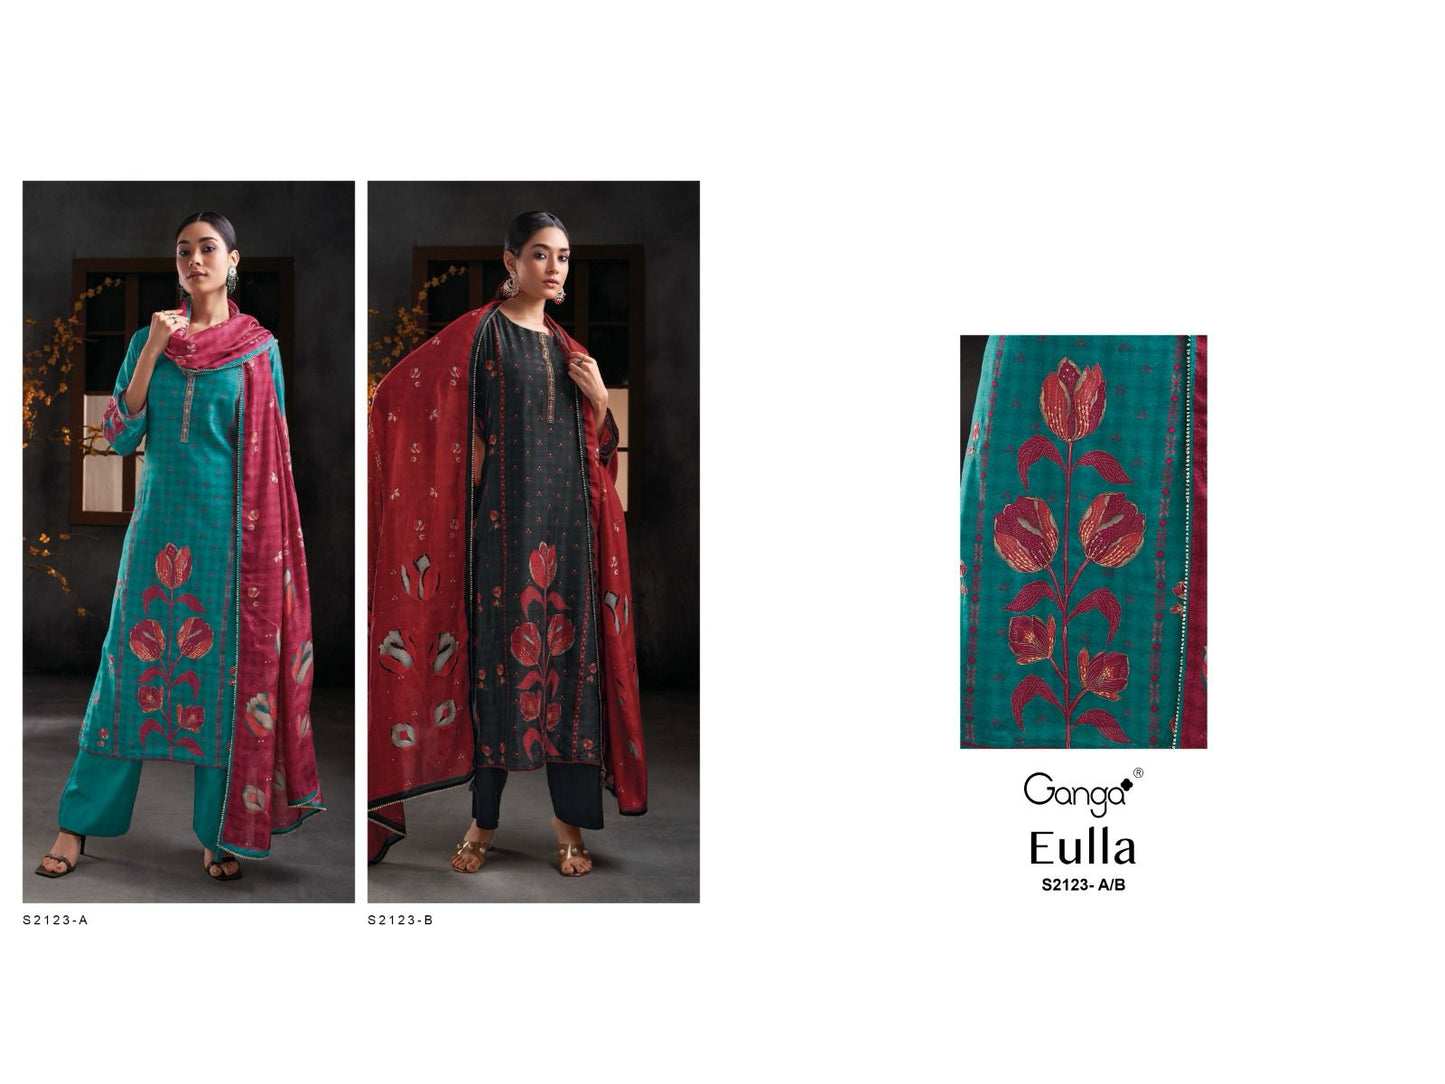 Eulla 2123 Ganga Bemberg Silk Plazzo Style Suits